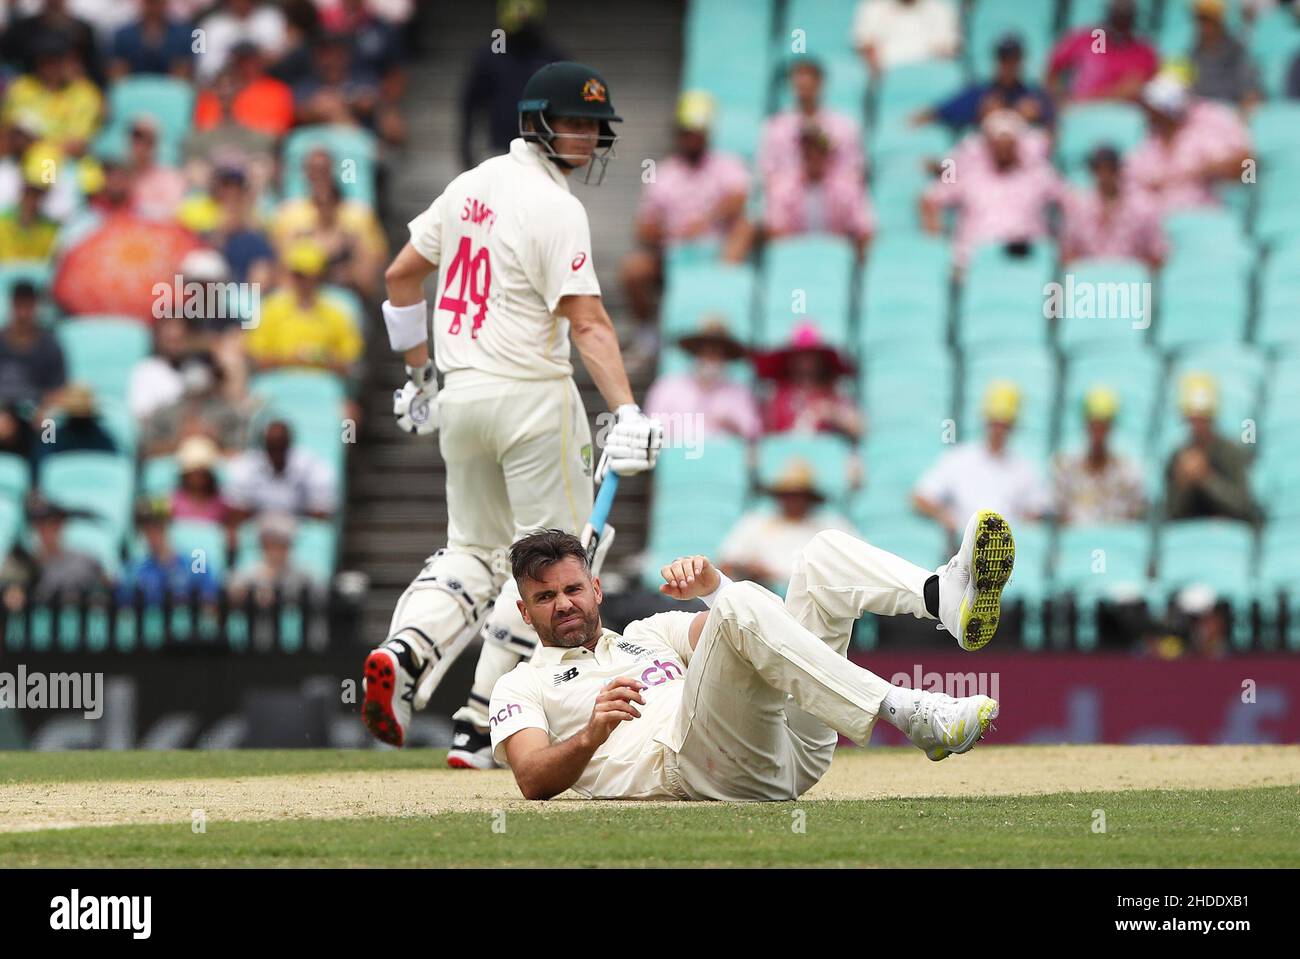 James Anderson in Inghilterra cade dopo una consegna durante il secondo giorno del quarto test Ashes al Sydney Cricket Ground, Sydney. Data foto: Giovedì 6 gennaio 2022. Foto Stock